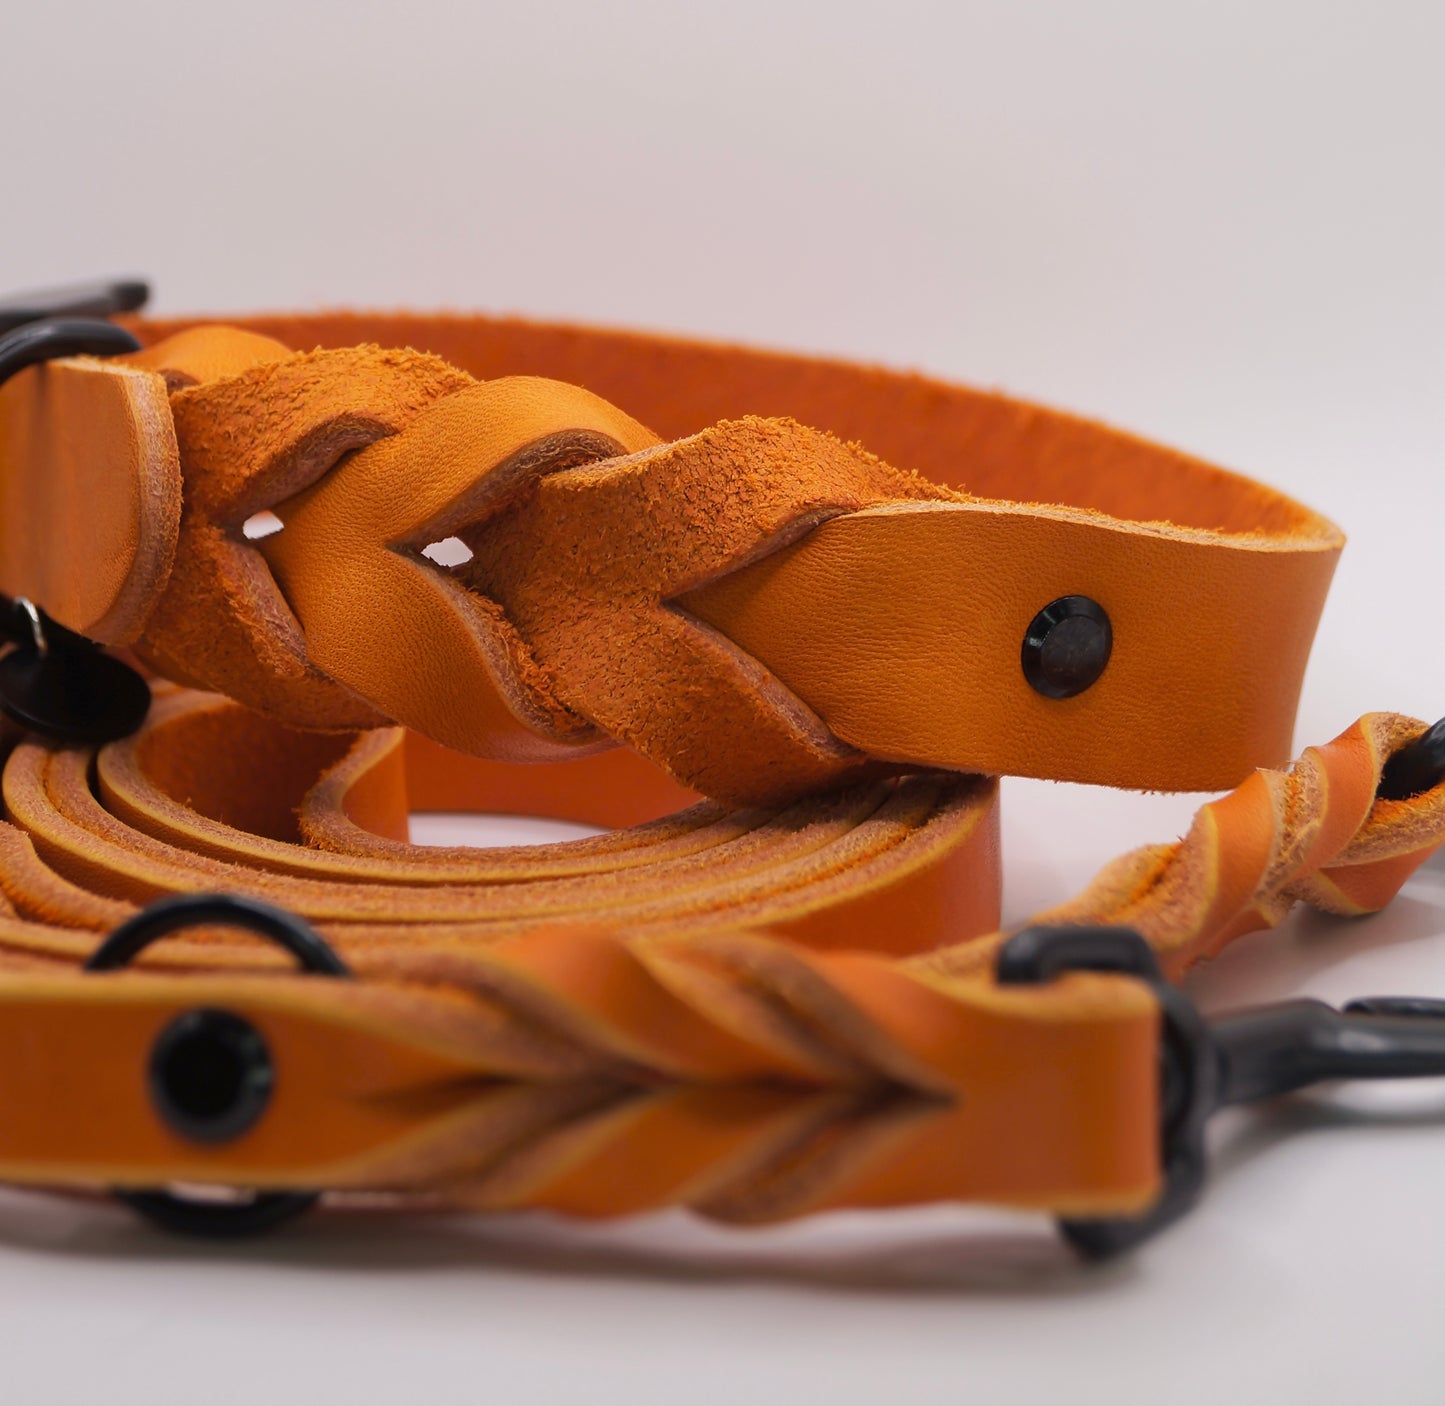 Lia's Choice: Halsband "Braided" und Leine "Twist" in Orange